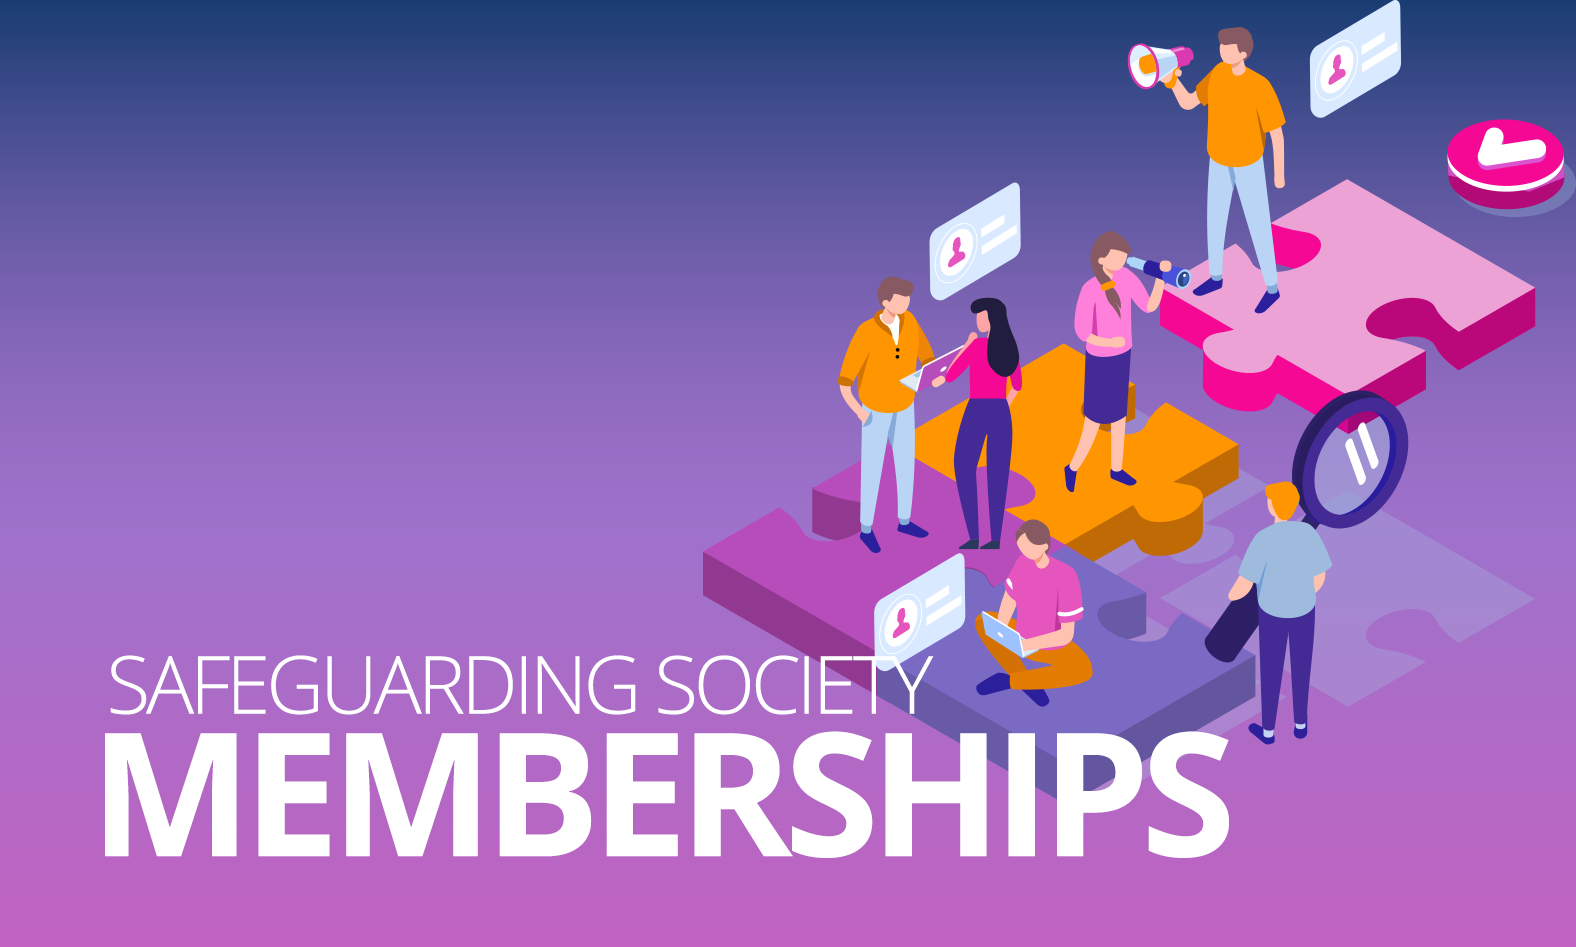 memberships